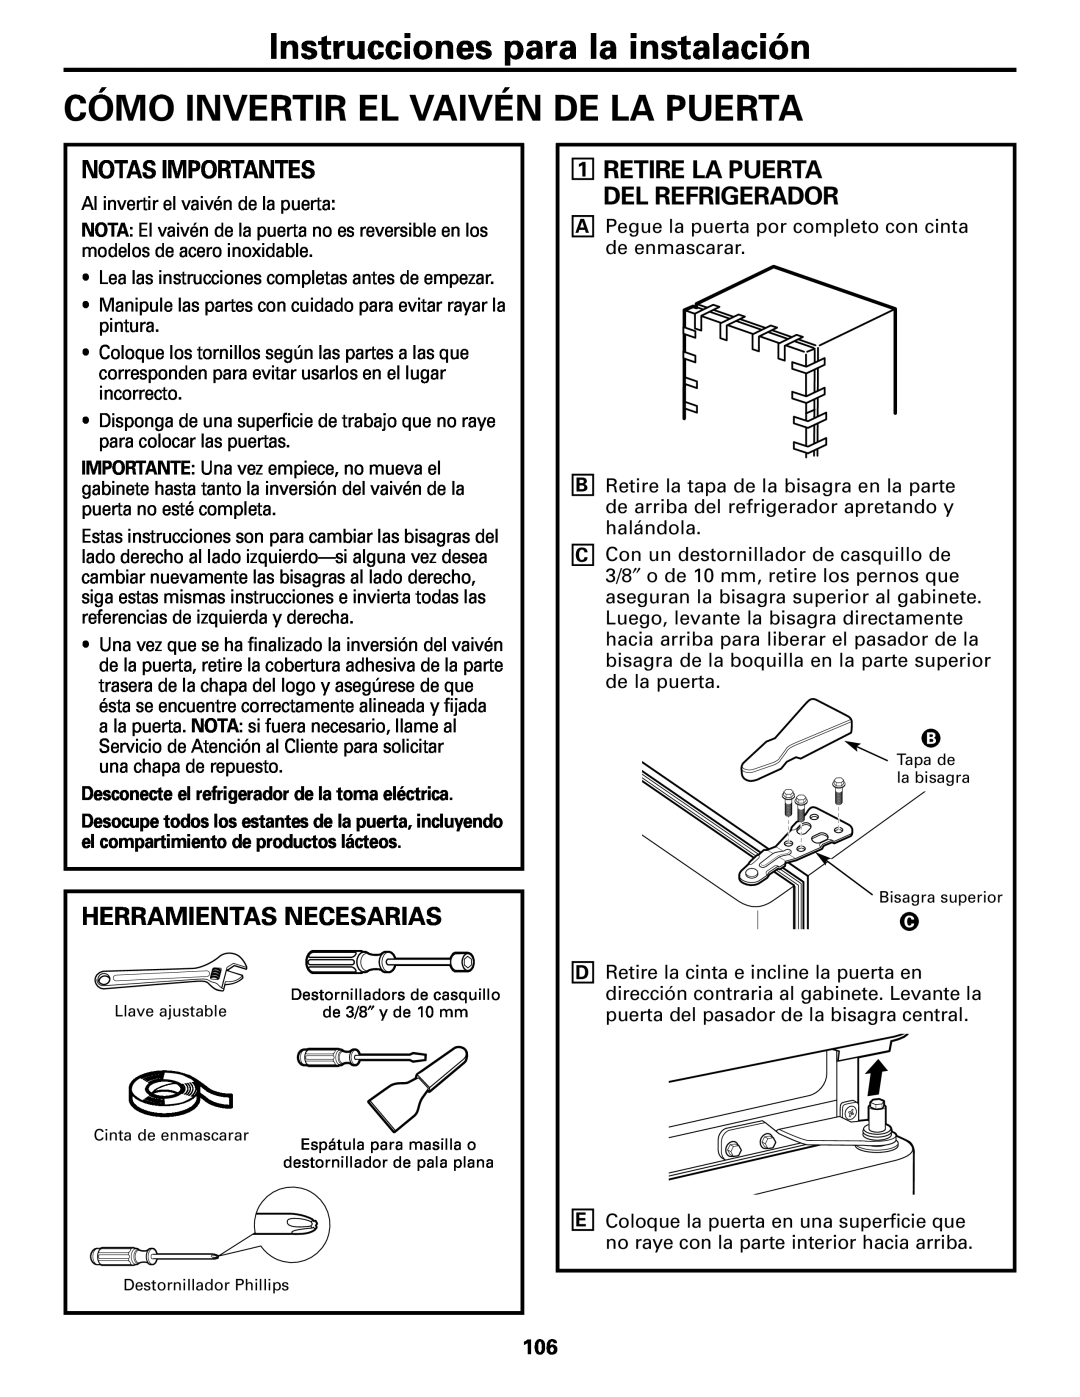 GE Monogram 22, 20 operating instructions Cómo Invertir El Vaivén De La Puerta, Notas Importantes, Herramientas Necesarias 